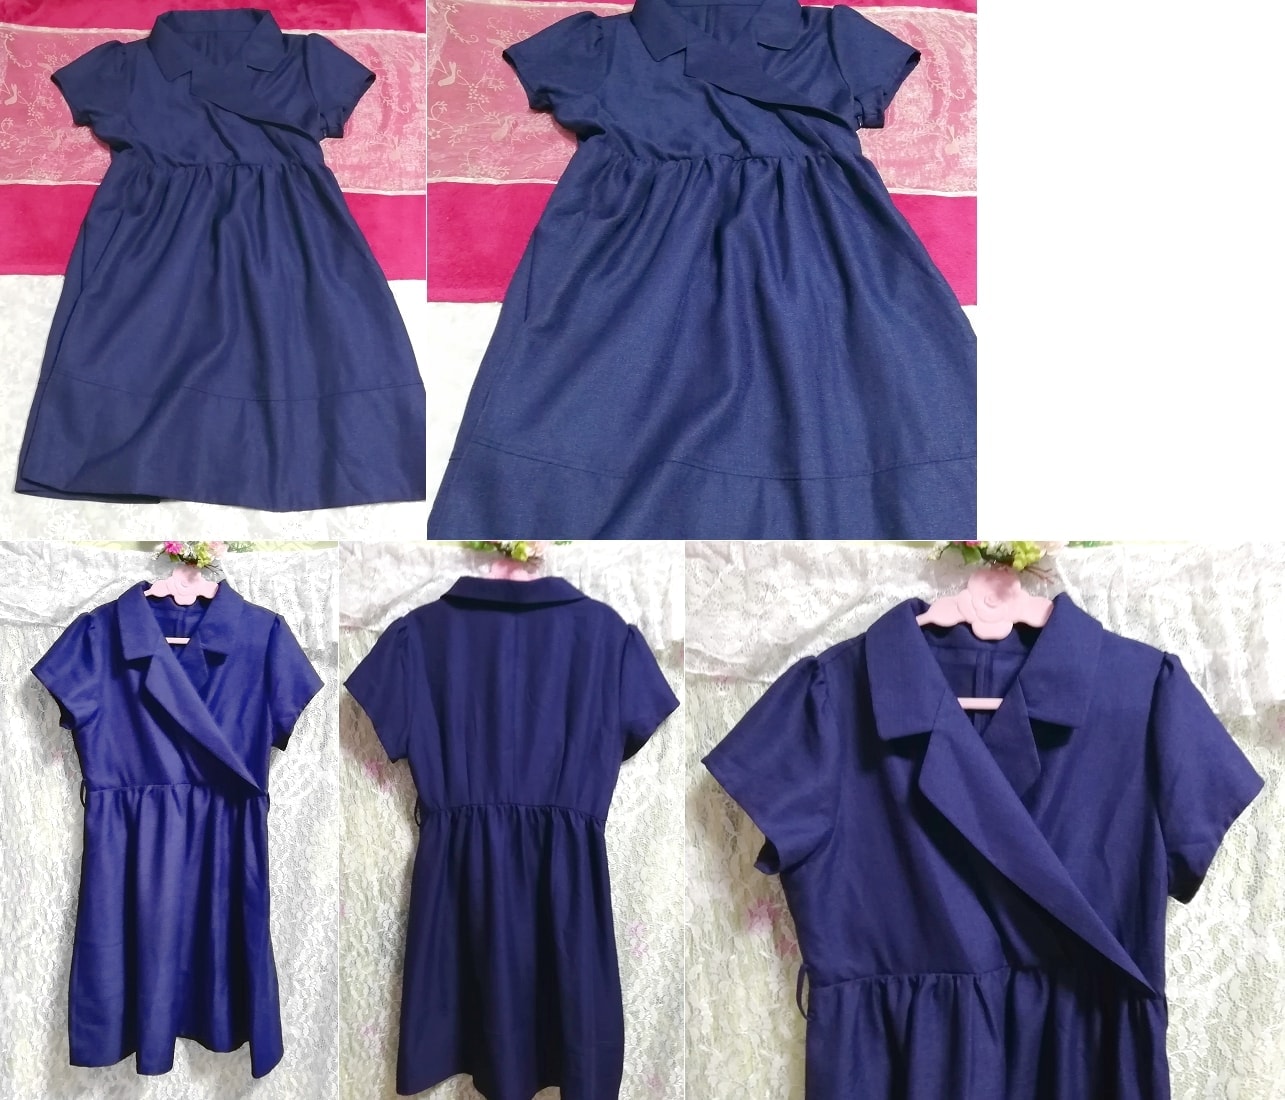 海军蓝海军西装风格短袖睡衣睡袍束腰连衣裙, 迷你裙, XL尺寸及以上